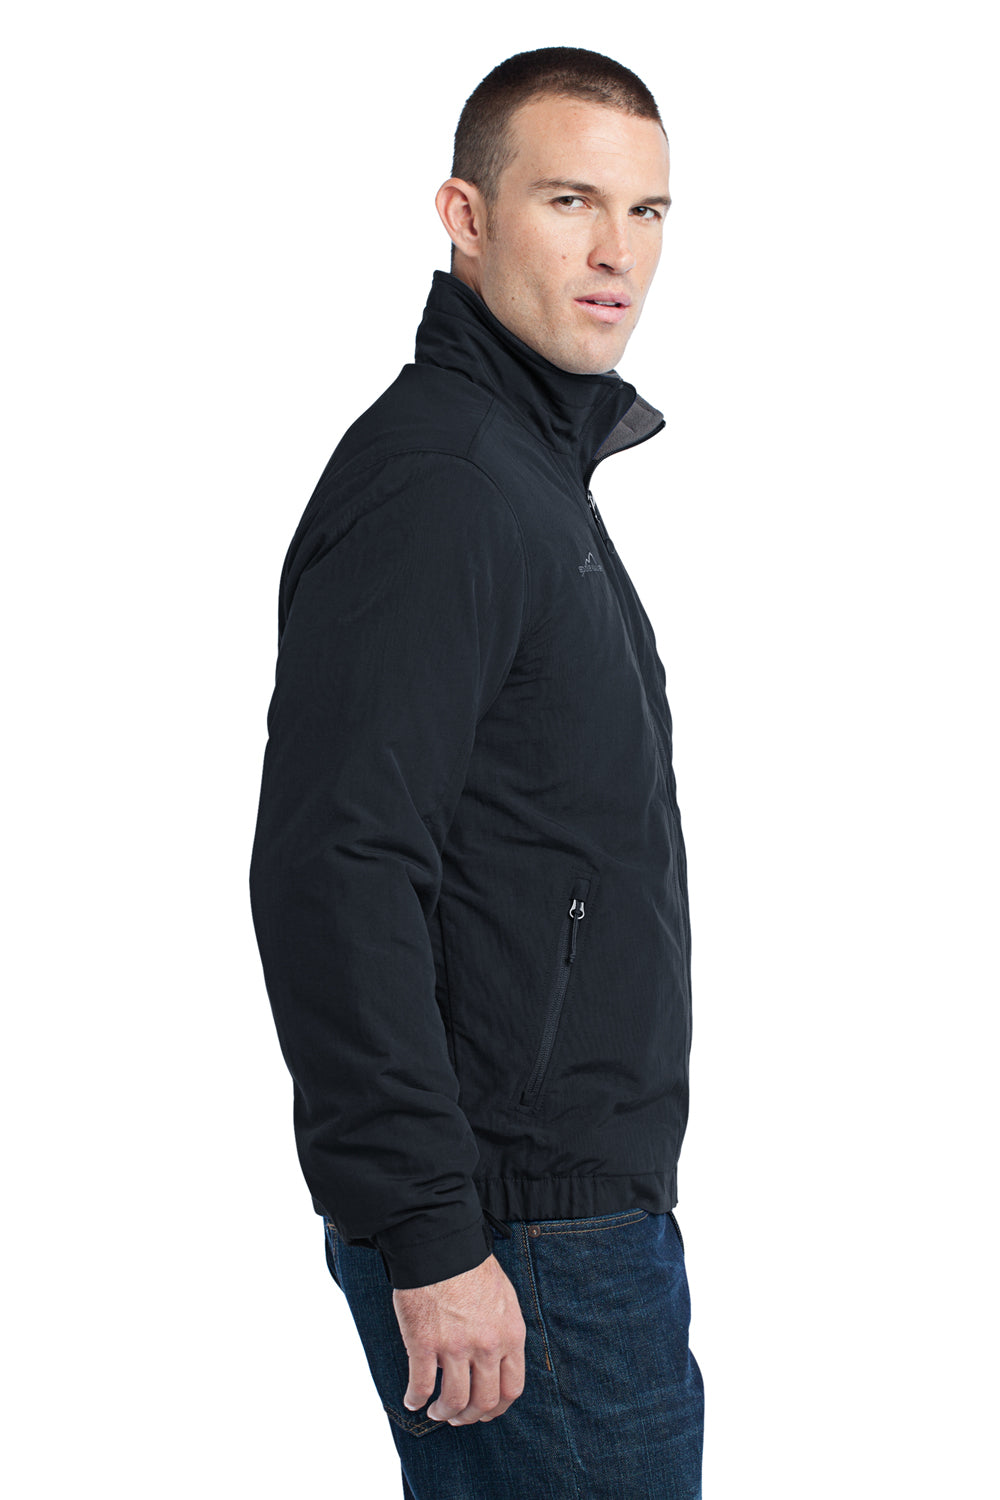 Eddie Bauer EB520 Mens Wind & Water Resistant Full Zip Jacket Black Model Side